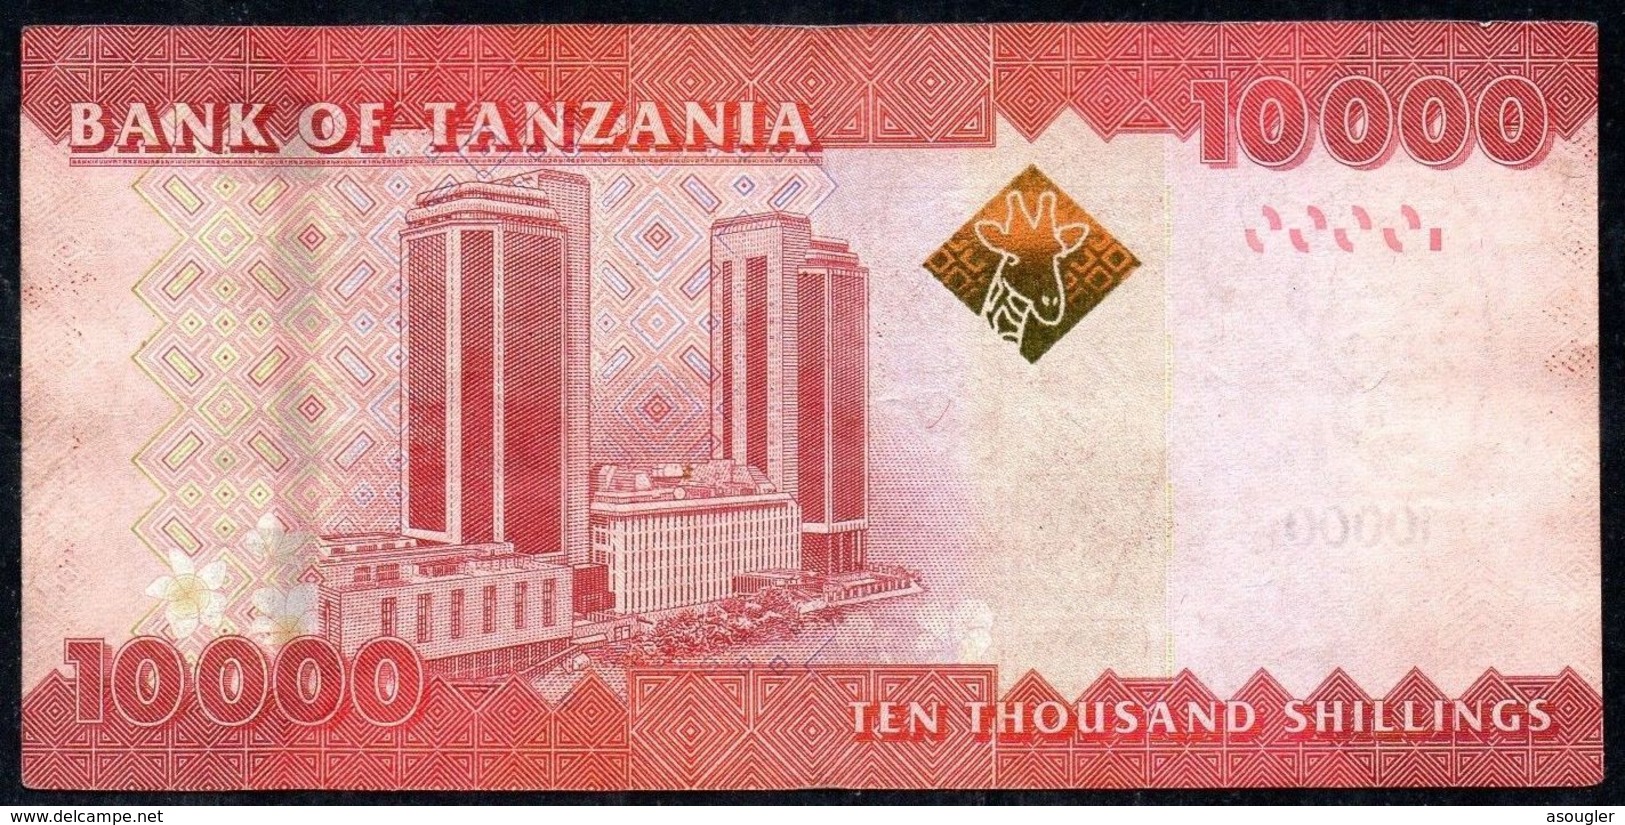 Tanzania 10000 Shilingi ND 2011 VG-F - Tansania